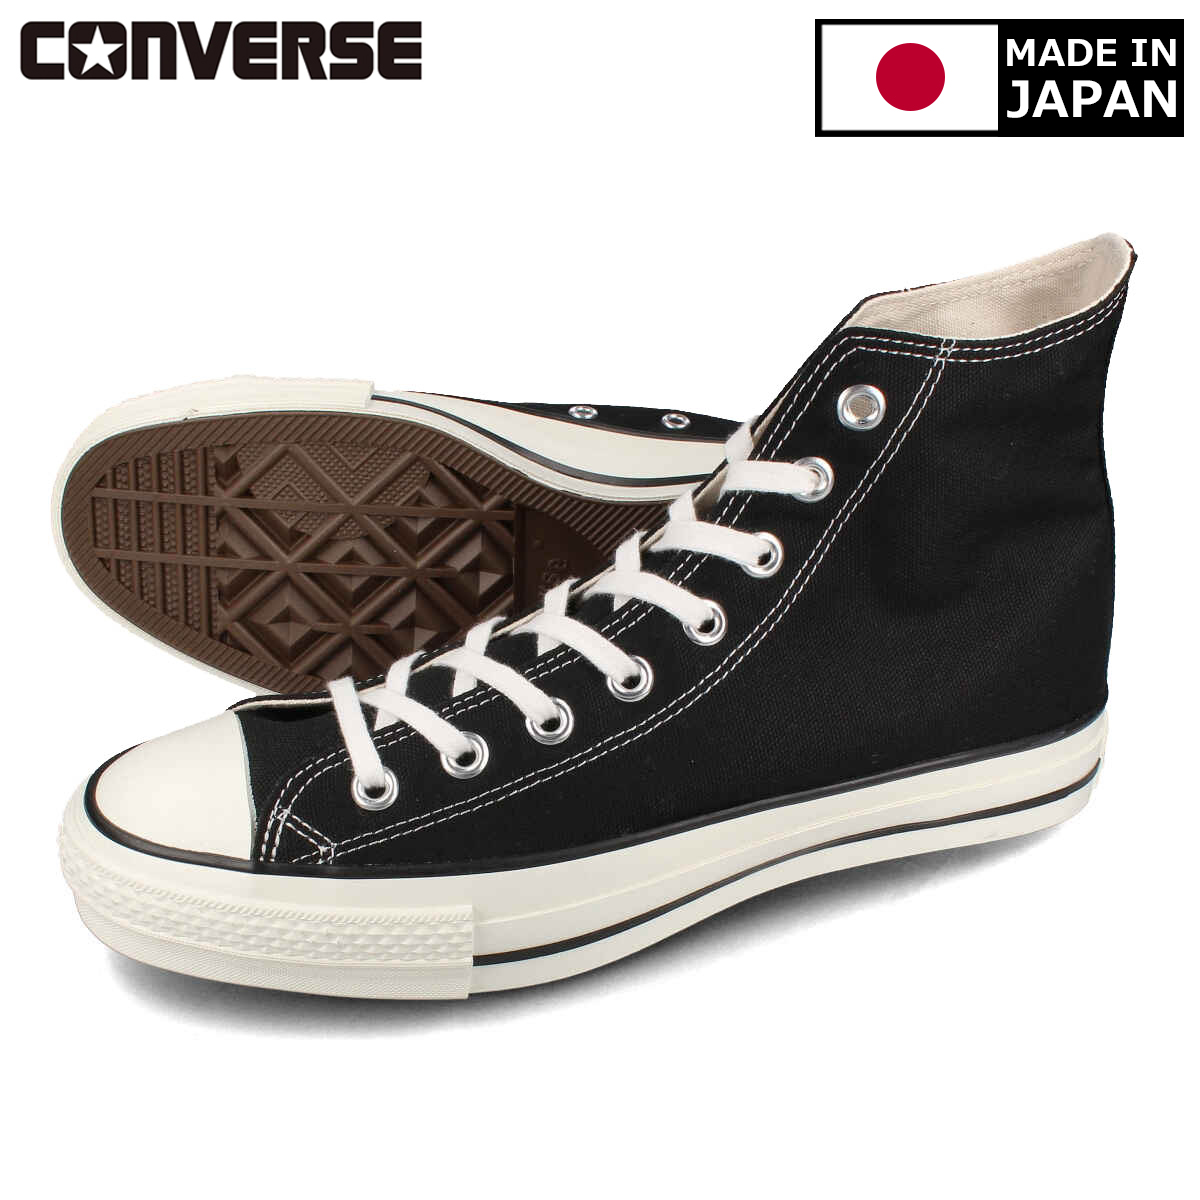 送料無料 CONVERSE コンバース メンズ 靴 スニーカー MADE IN JAPAN メイド イン ALL J 日本製 ジャパン 期間限定送料無料 32067961 直送商品 オールスター BLACK STAR CANVAS HI